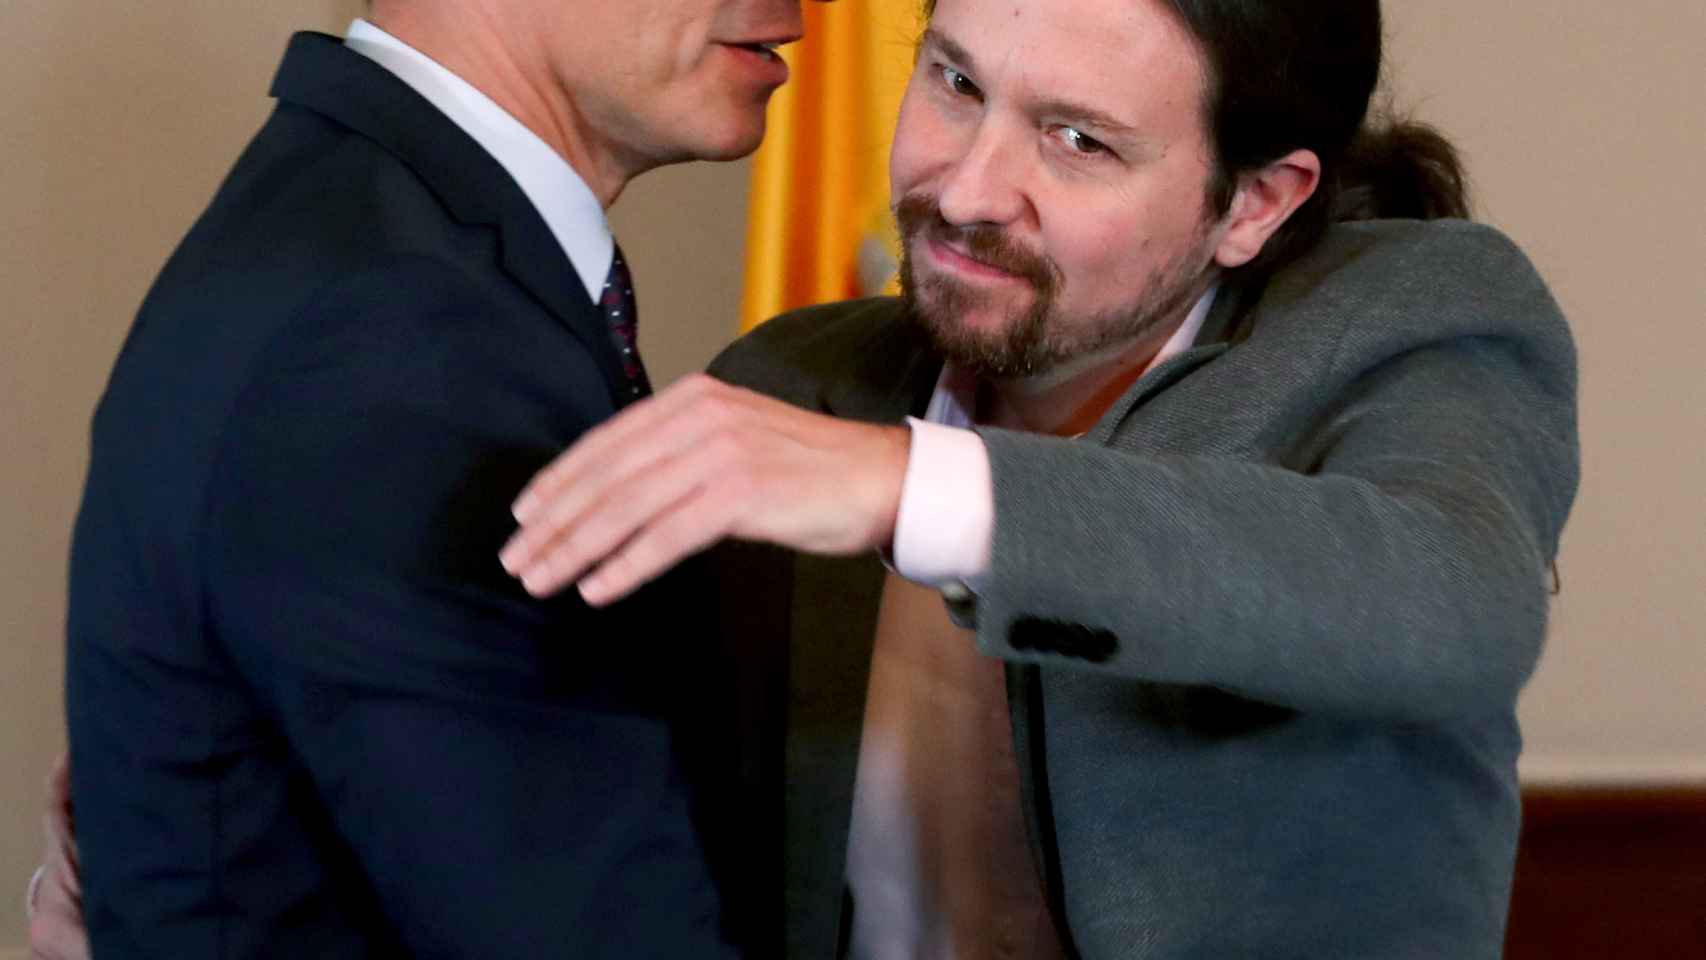 Pedro Sánchez mira de reojo a Pablo Iglesias en el abrazo con el que sellaron su acuerdo de Gobierno de coalición.